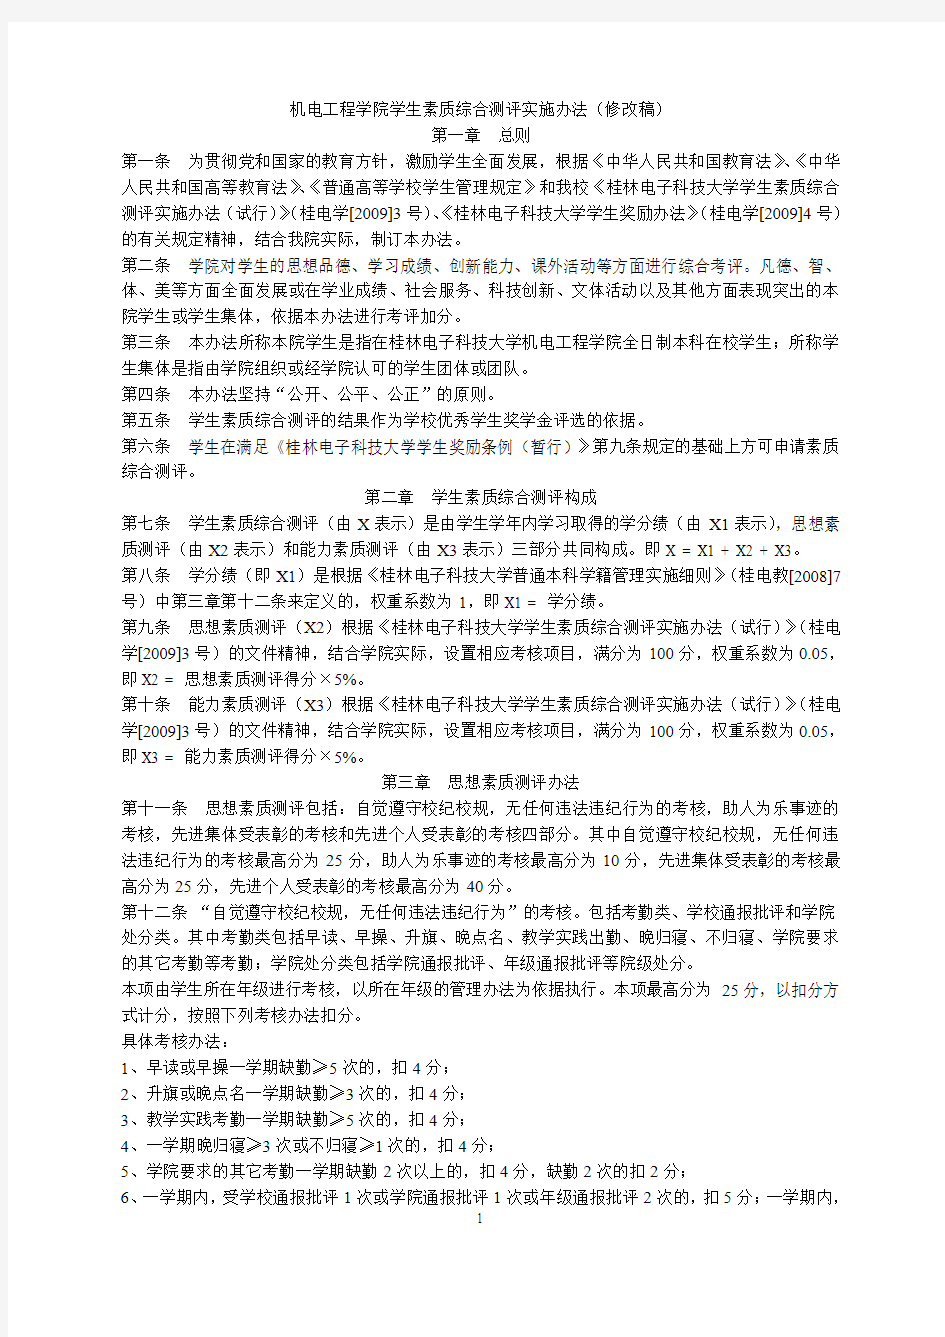 桂林电子科技大学机电工程学院学生素质综合测评办法(2011.09.23)